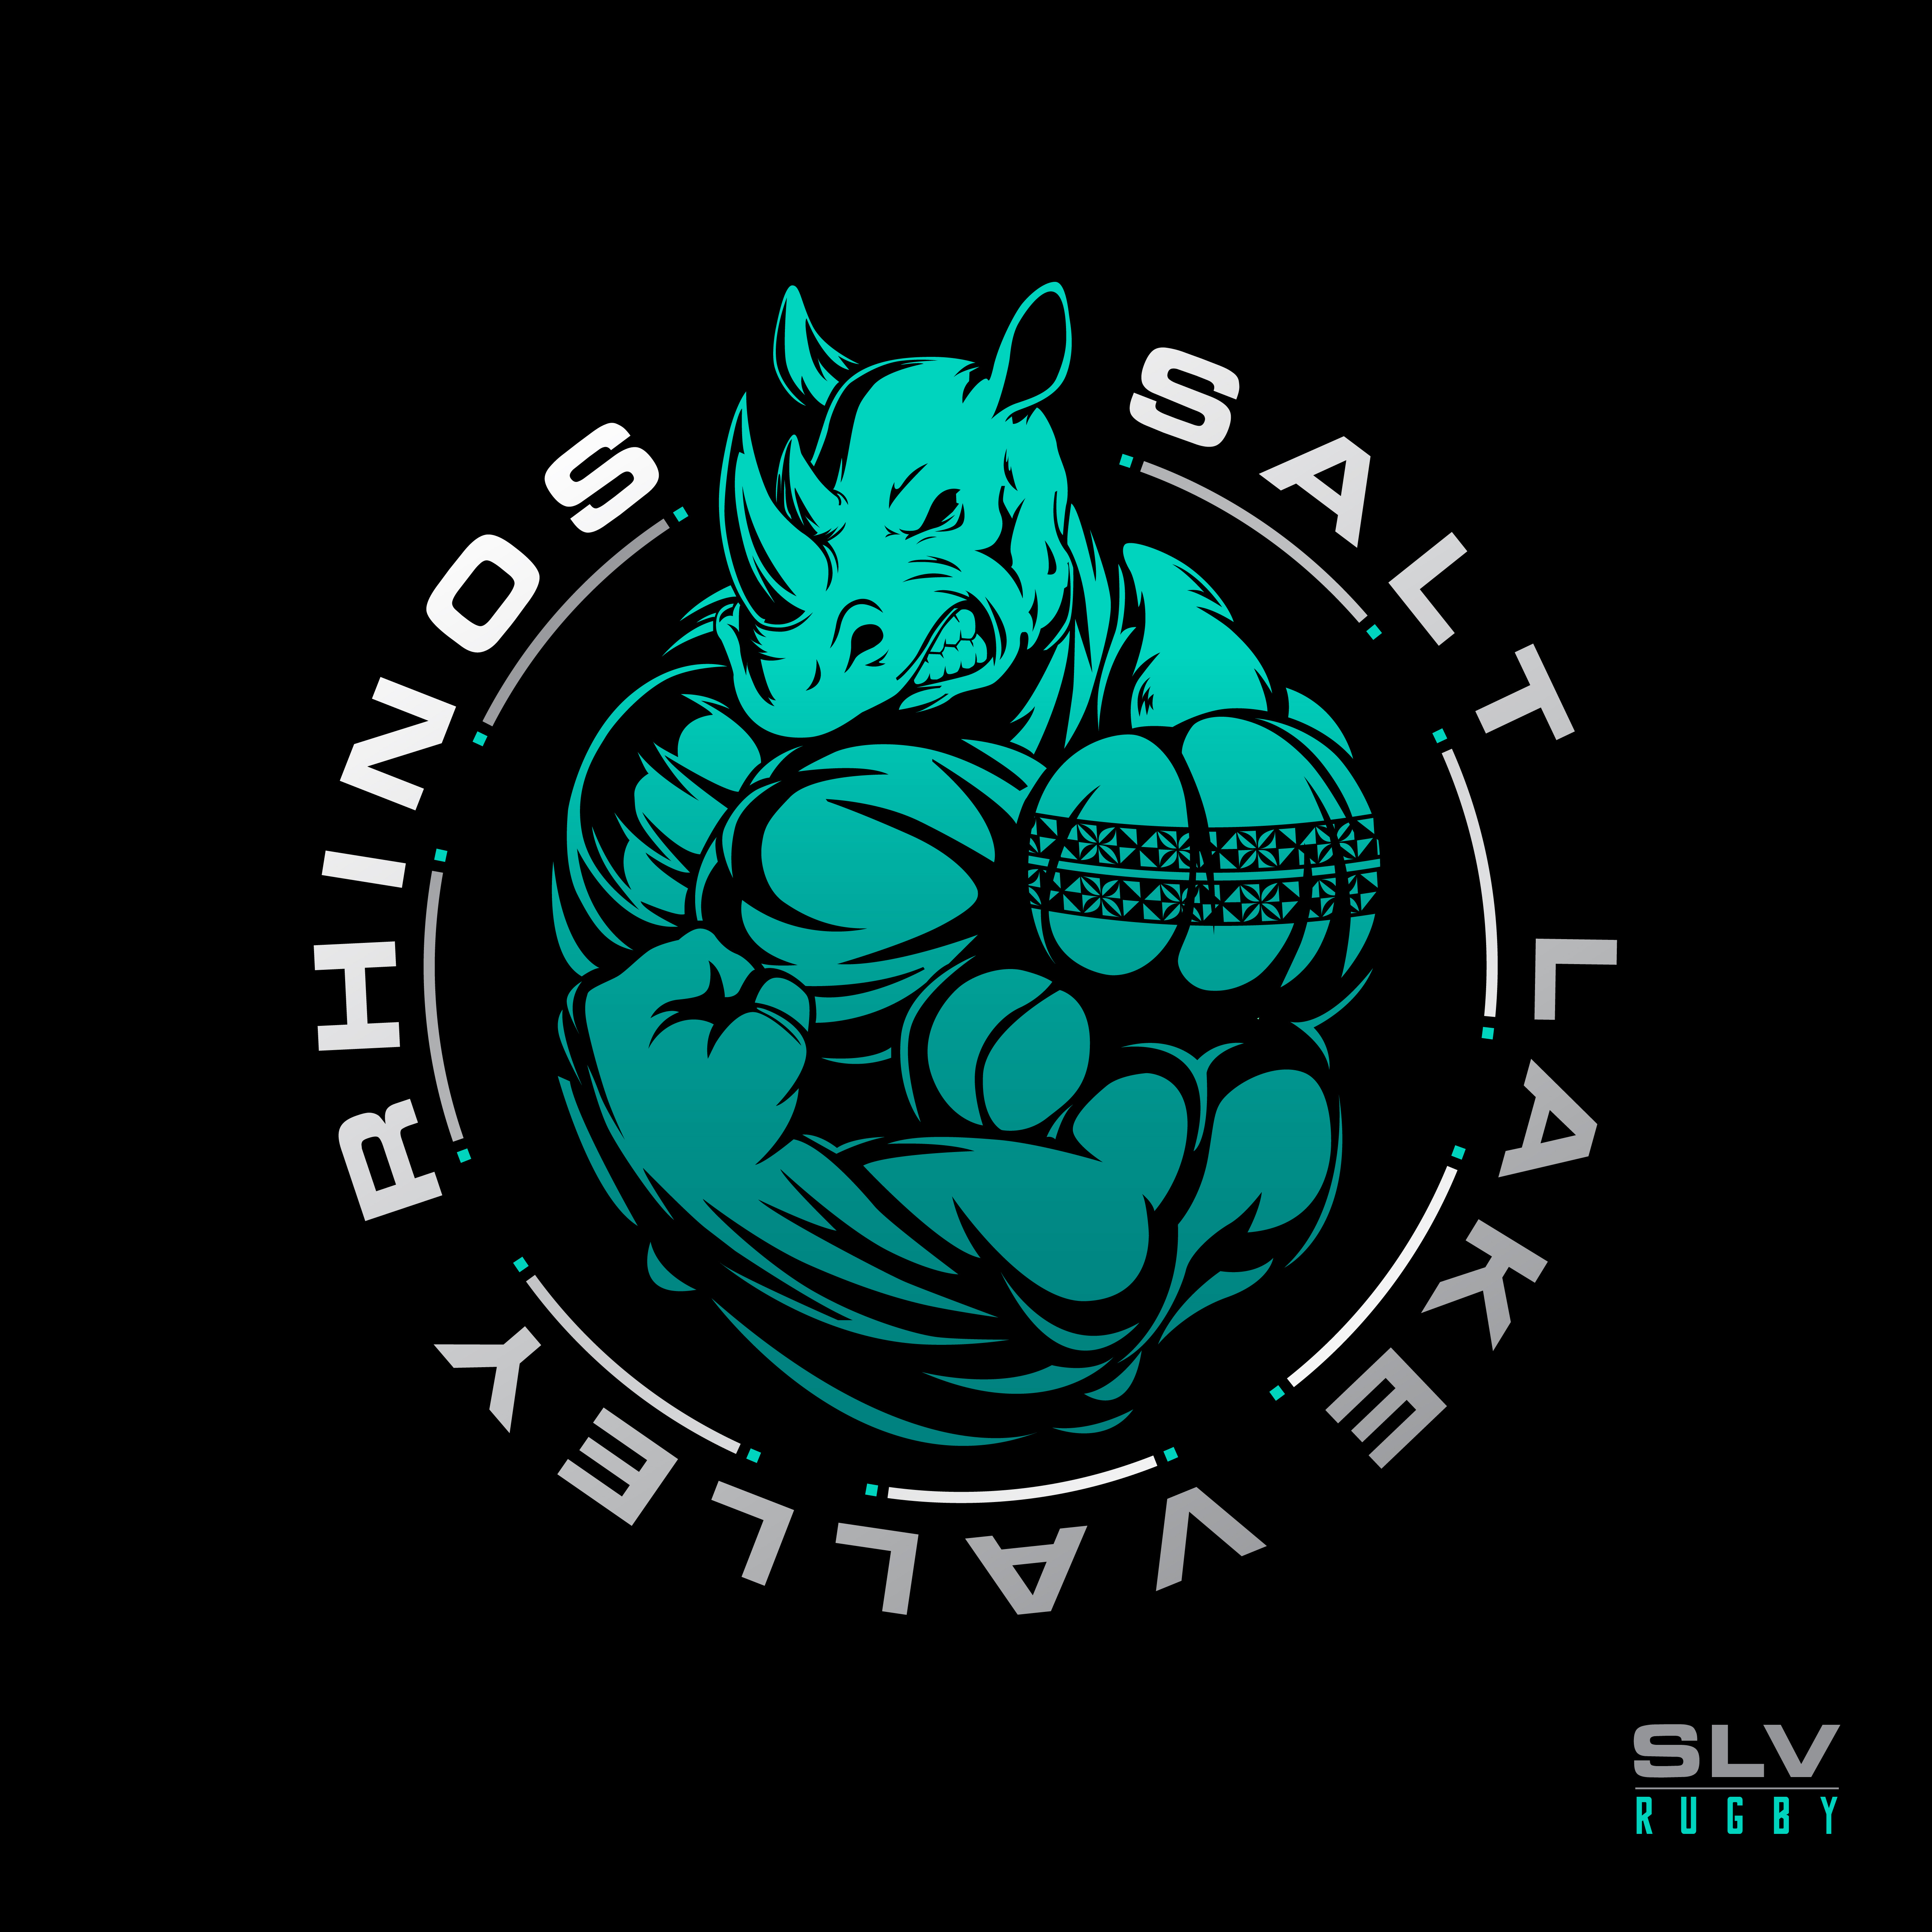 Rhino_logo_final_v2 (1)